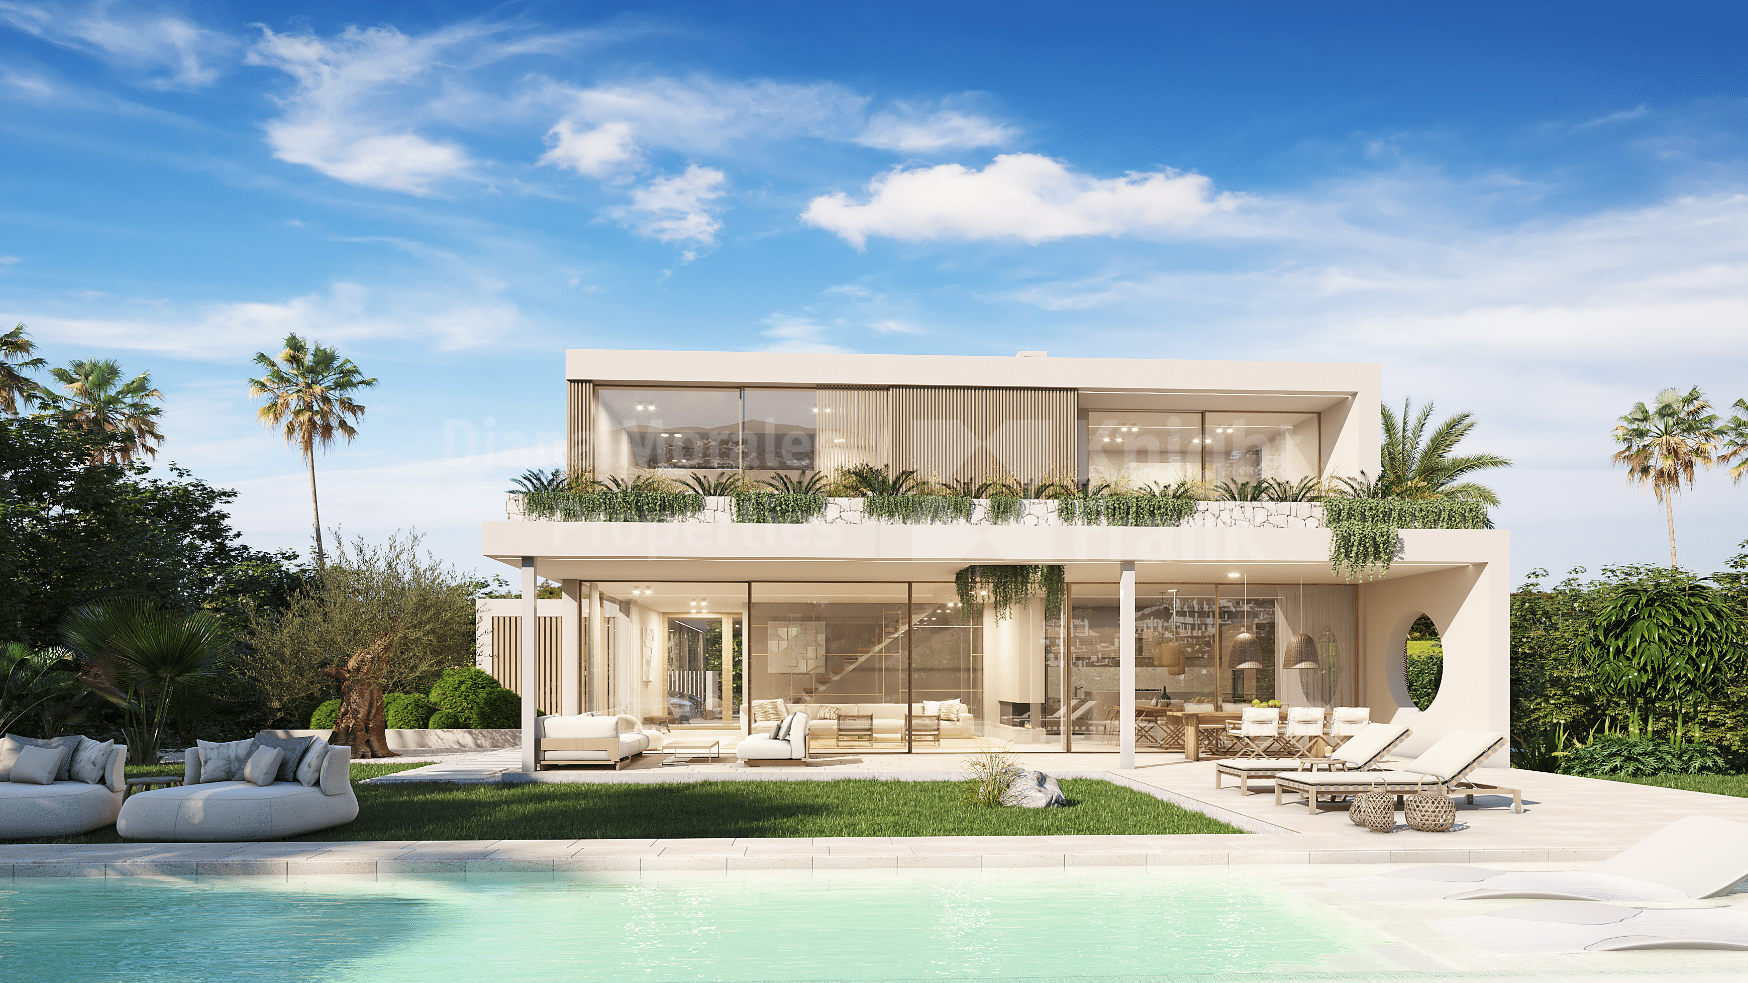 La Alqueria, Casa Calma es una nueva villa cerca de campos de golf en urbanización con seguridad